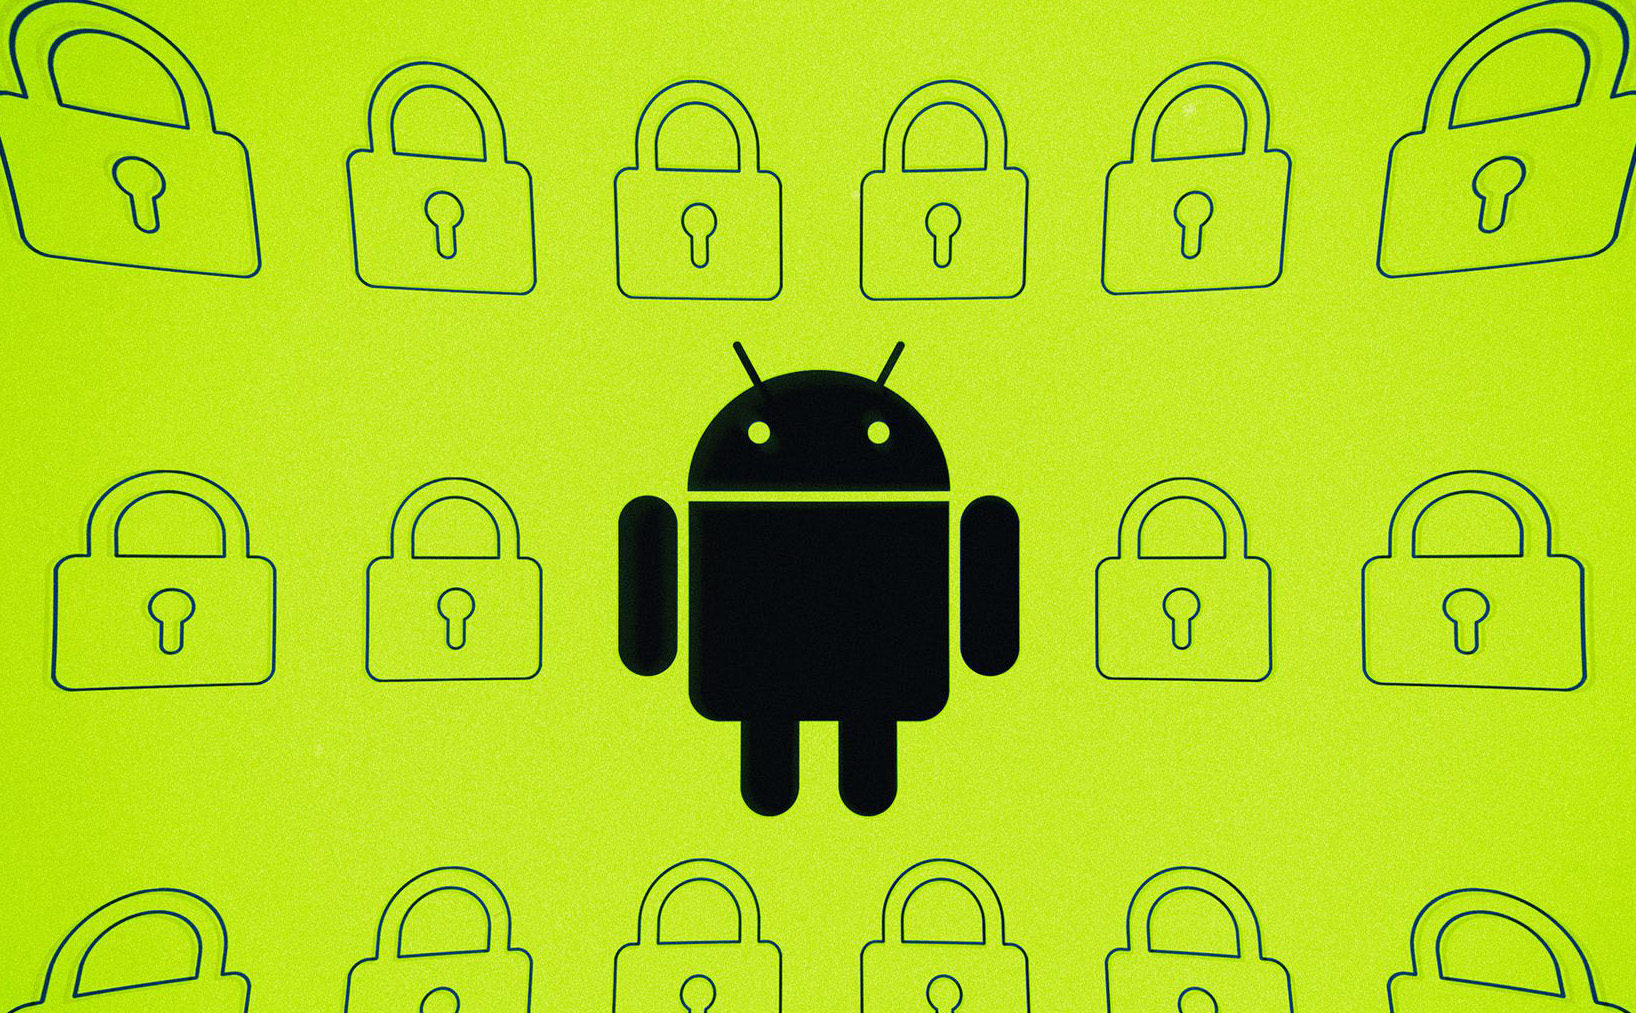 Hàng triệu máy Android dính lỗ hổng bảo mật ở firmware, có thể khai thác để đọc thông tin nhạy cảm